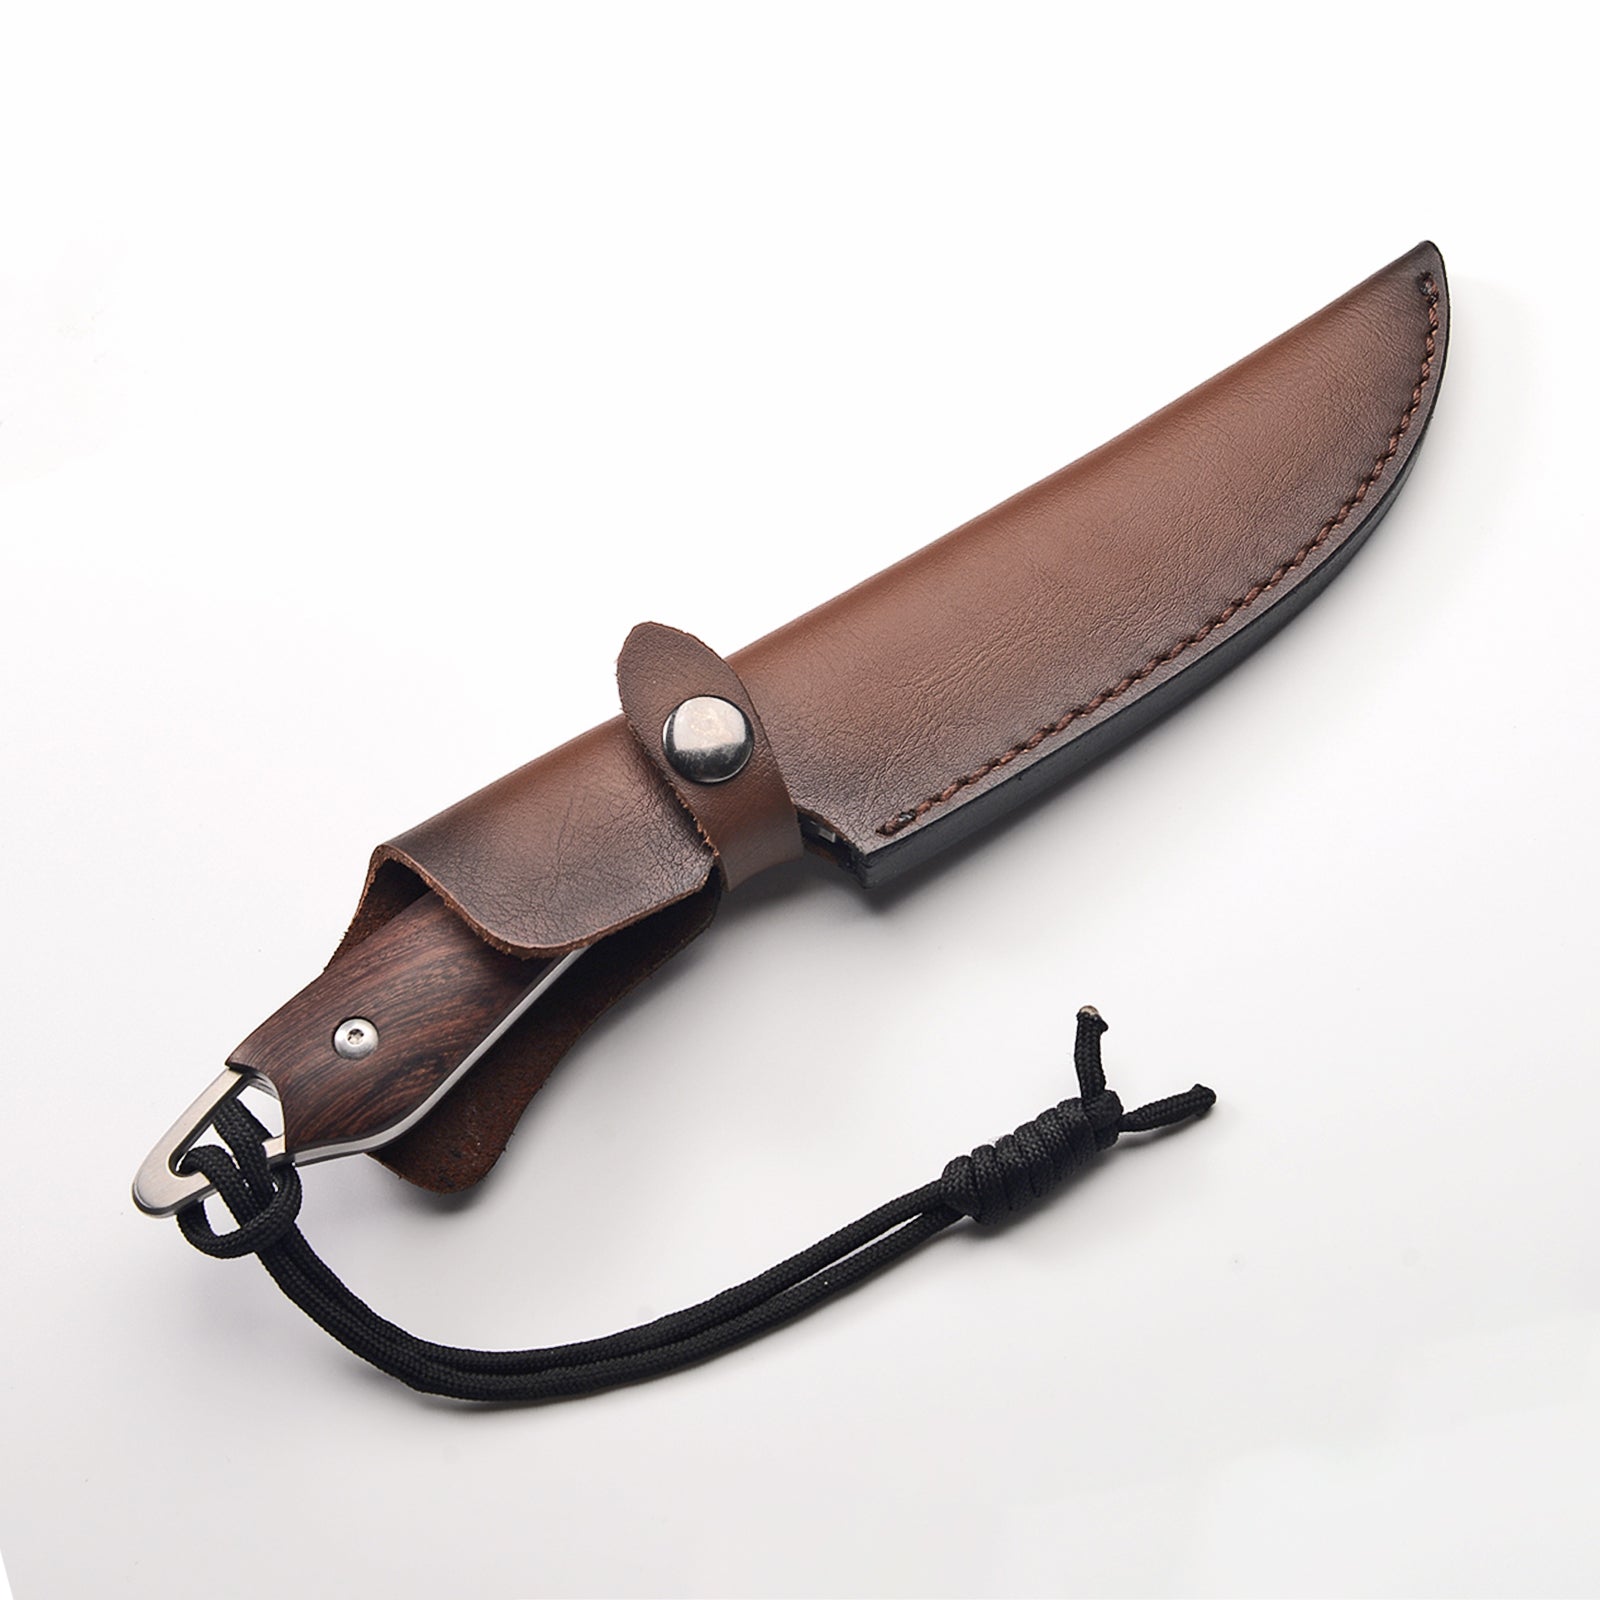 Bushcraft knife